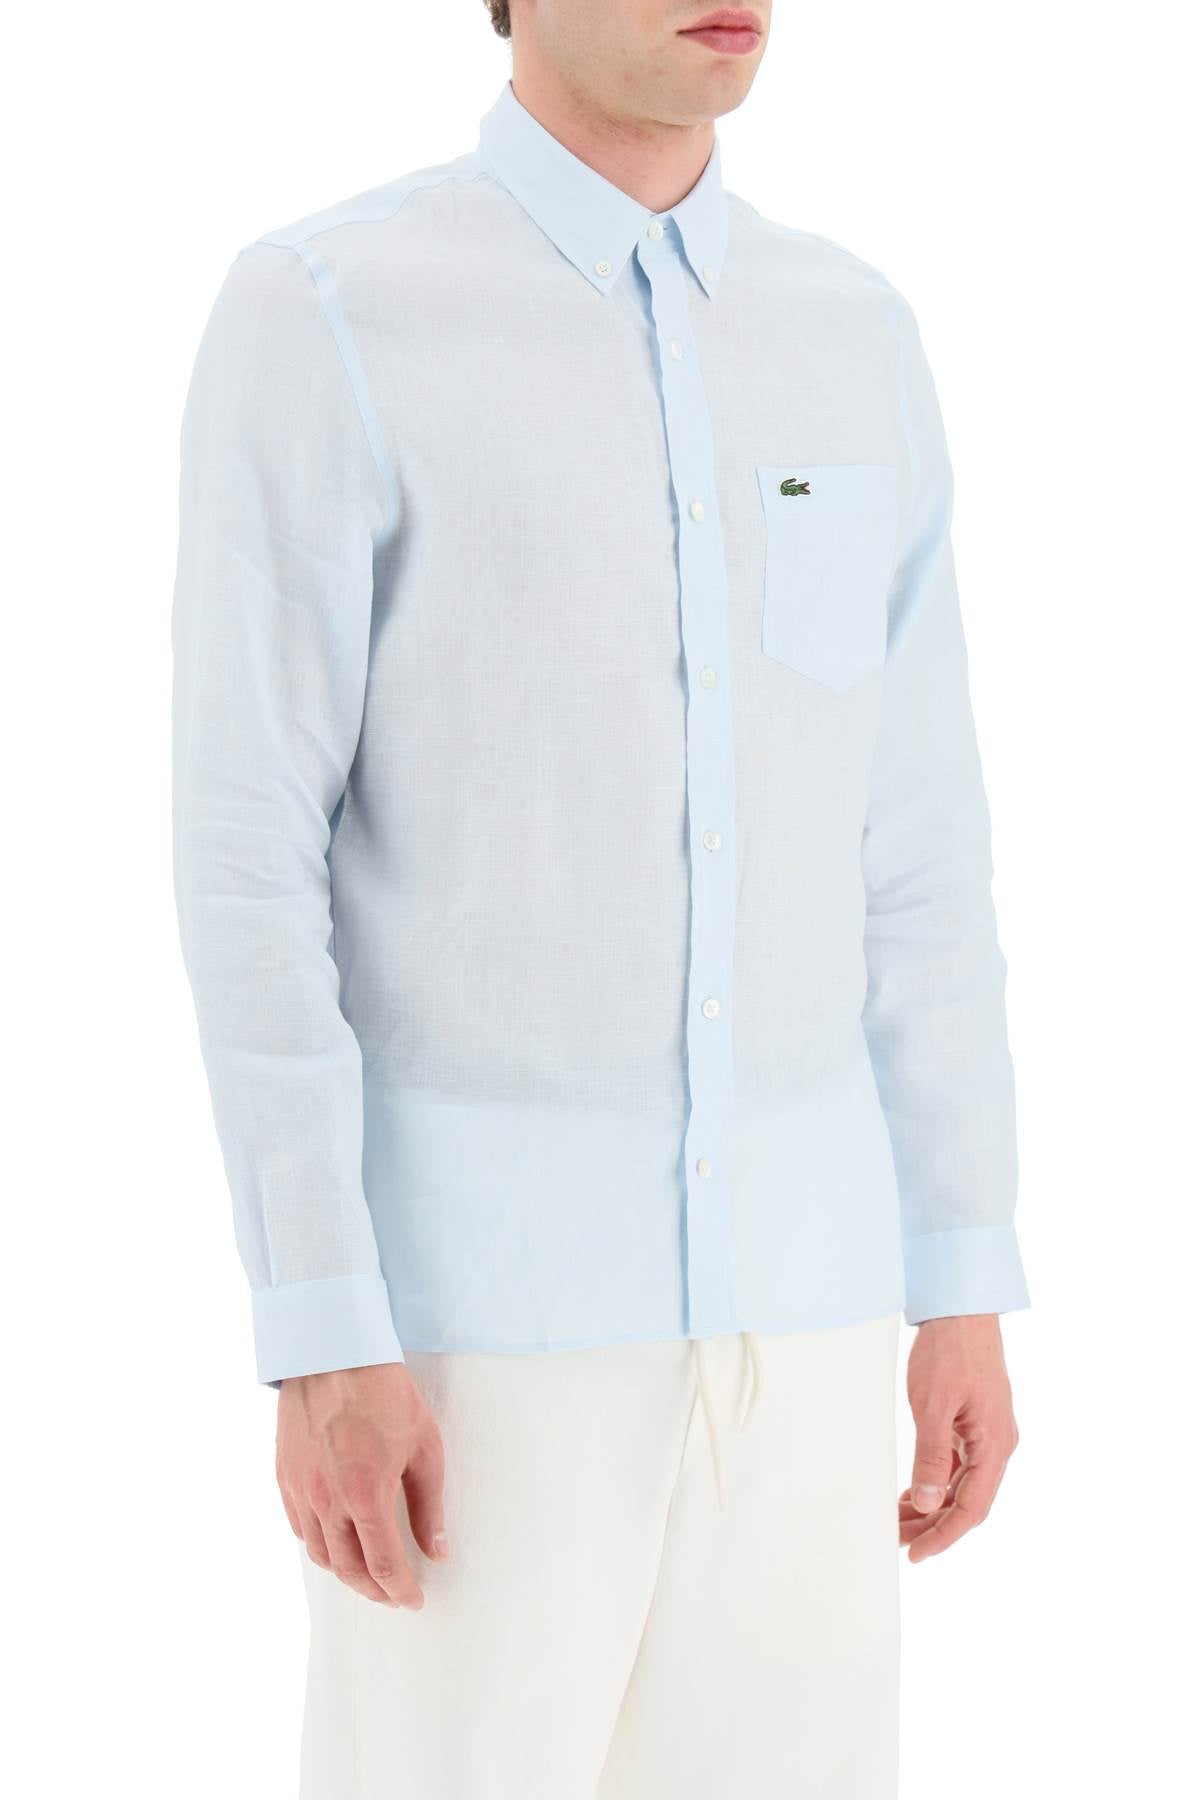 Lacoste light linen shirt-1